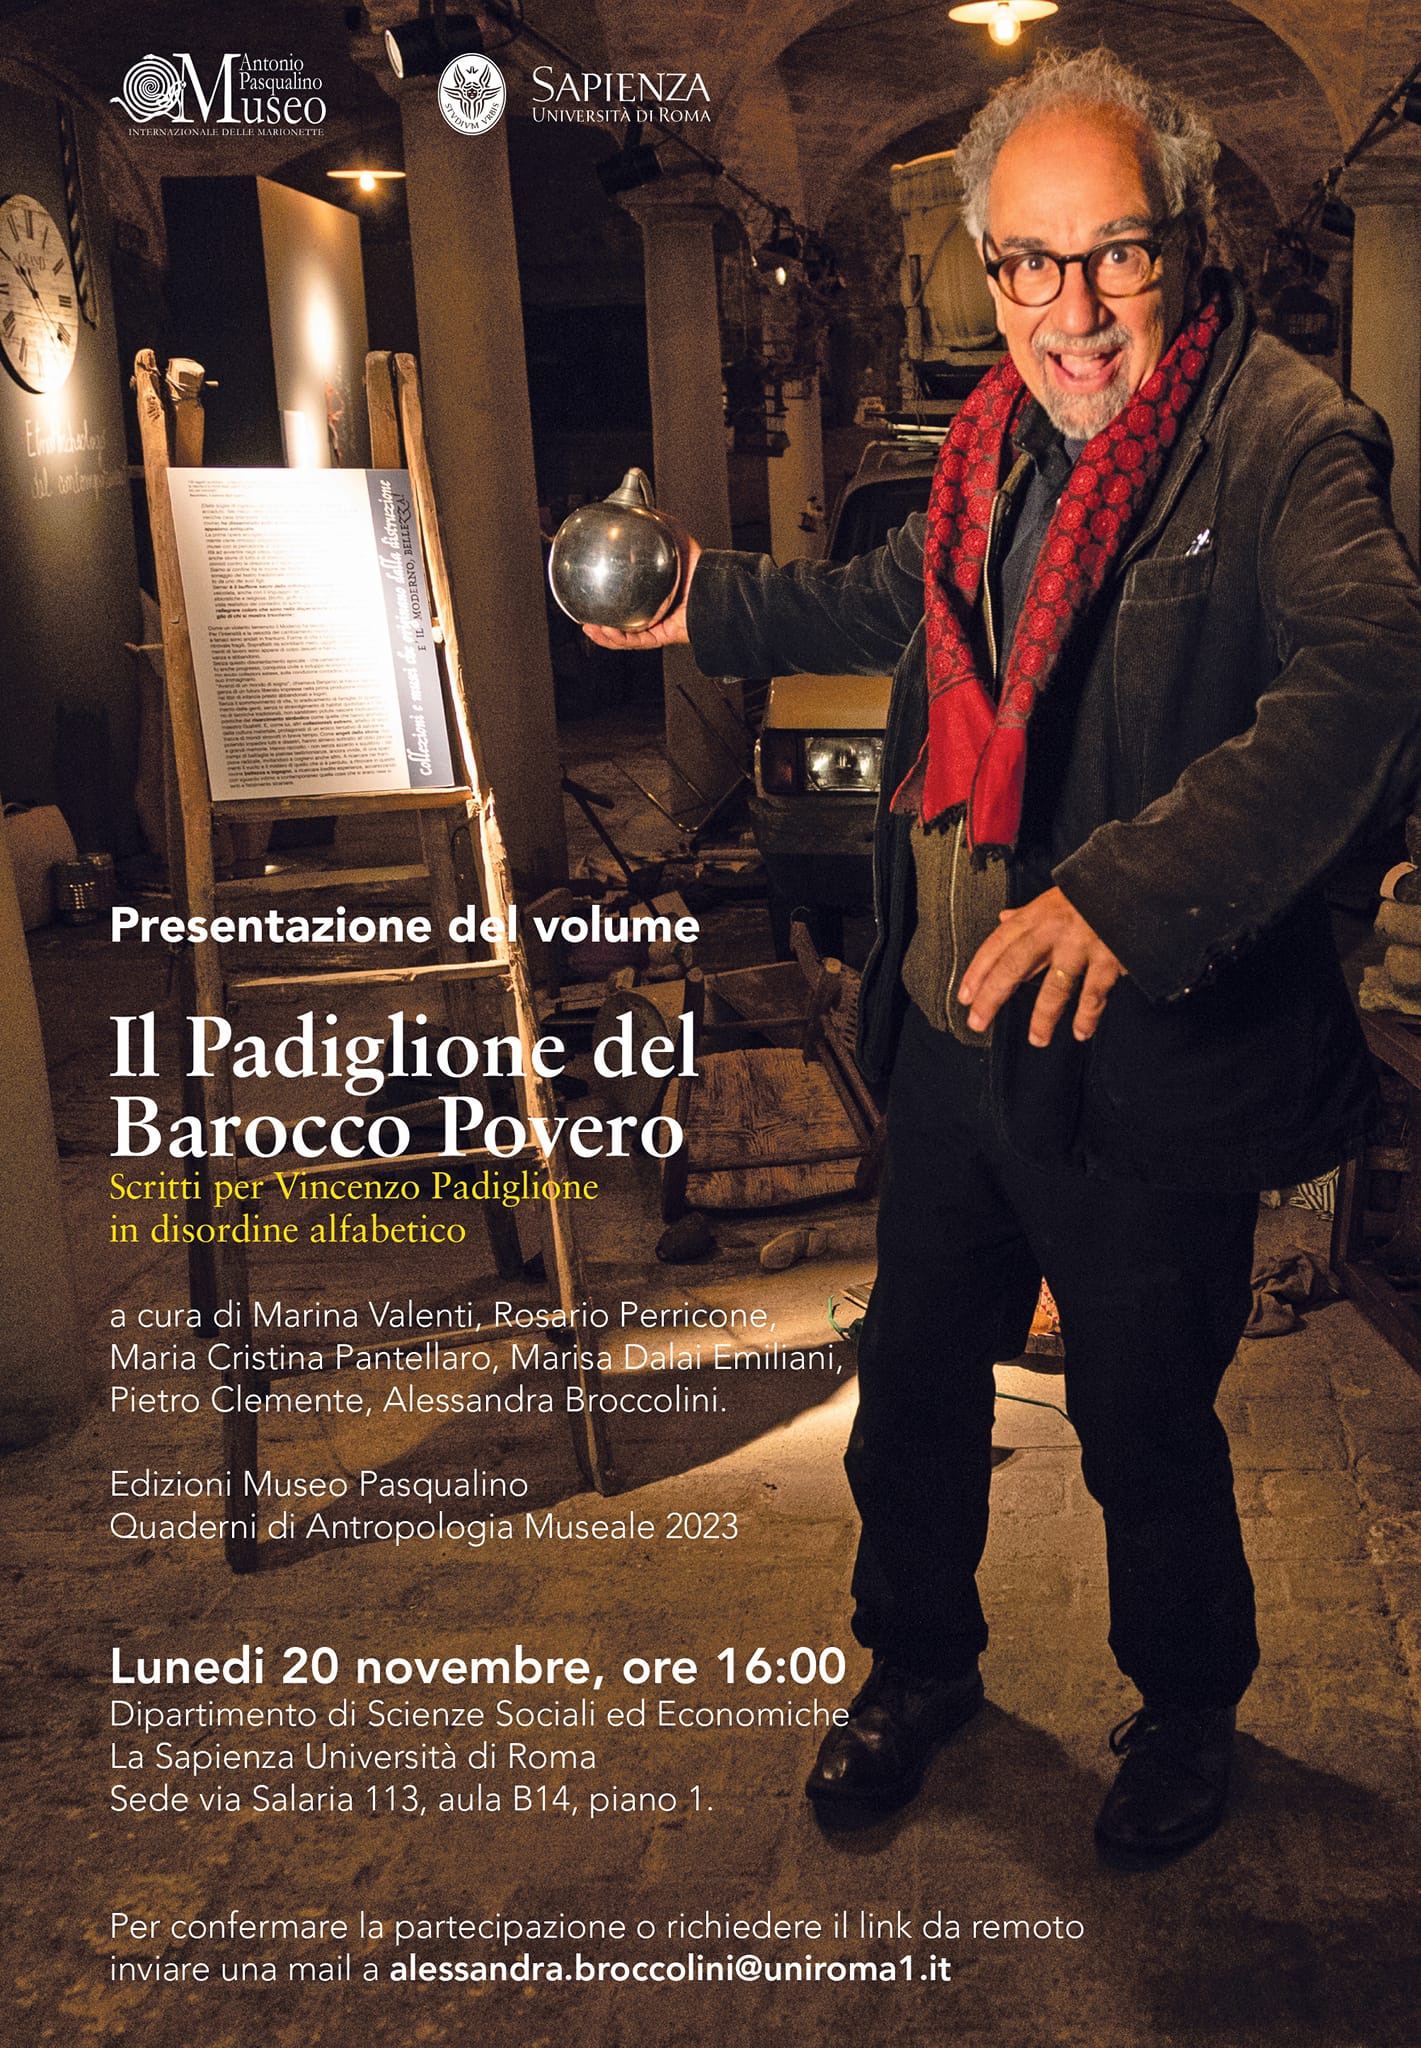 Il Padiglione del Barocco Povero, presentazione 20 novembre 2023, sapienza università di Roma